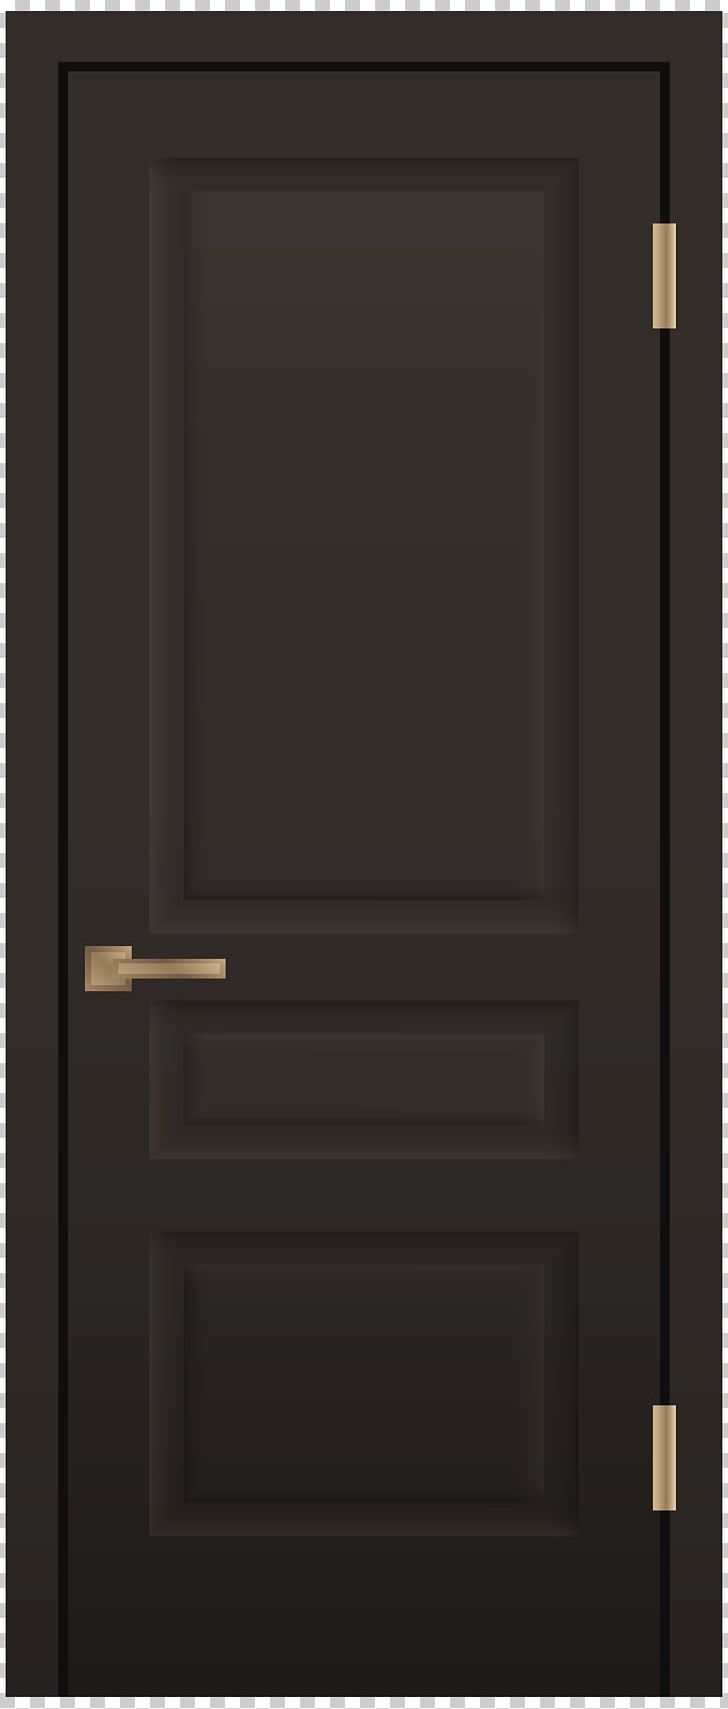 Window Sliding Glass Door PNG, Clipart, Automatic Door, Black, Clip Art, Computer Icons, Door Free PNG Download